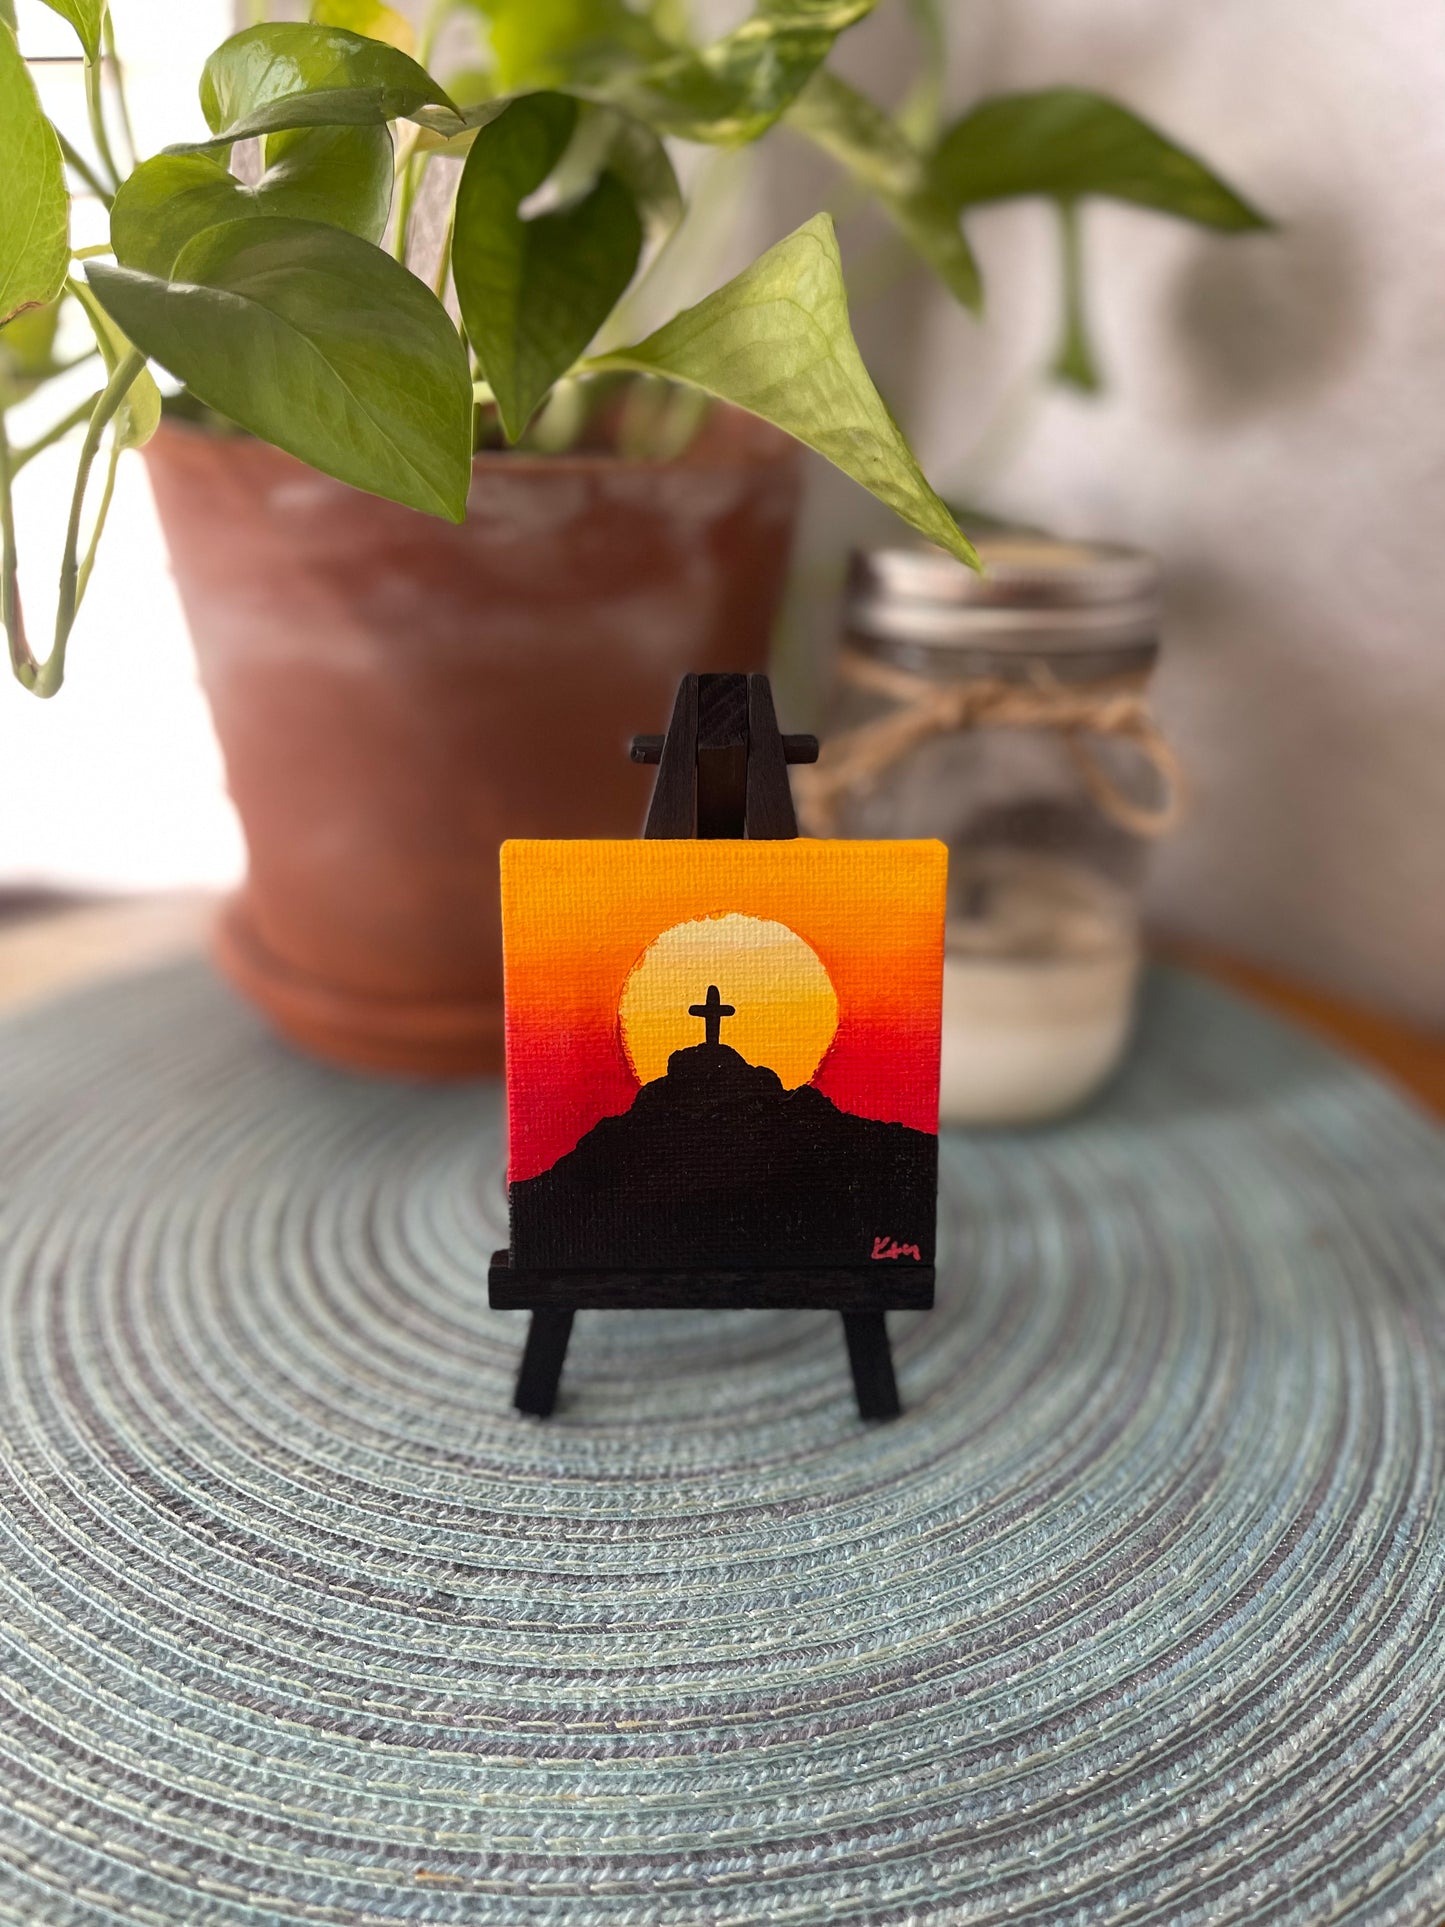 Mt Cristo Rey Sun Mini Painting on Easel